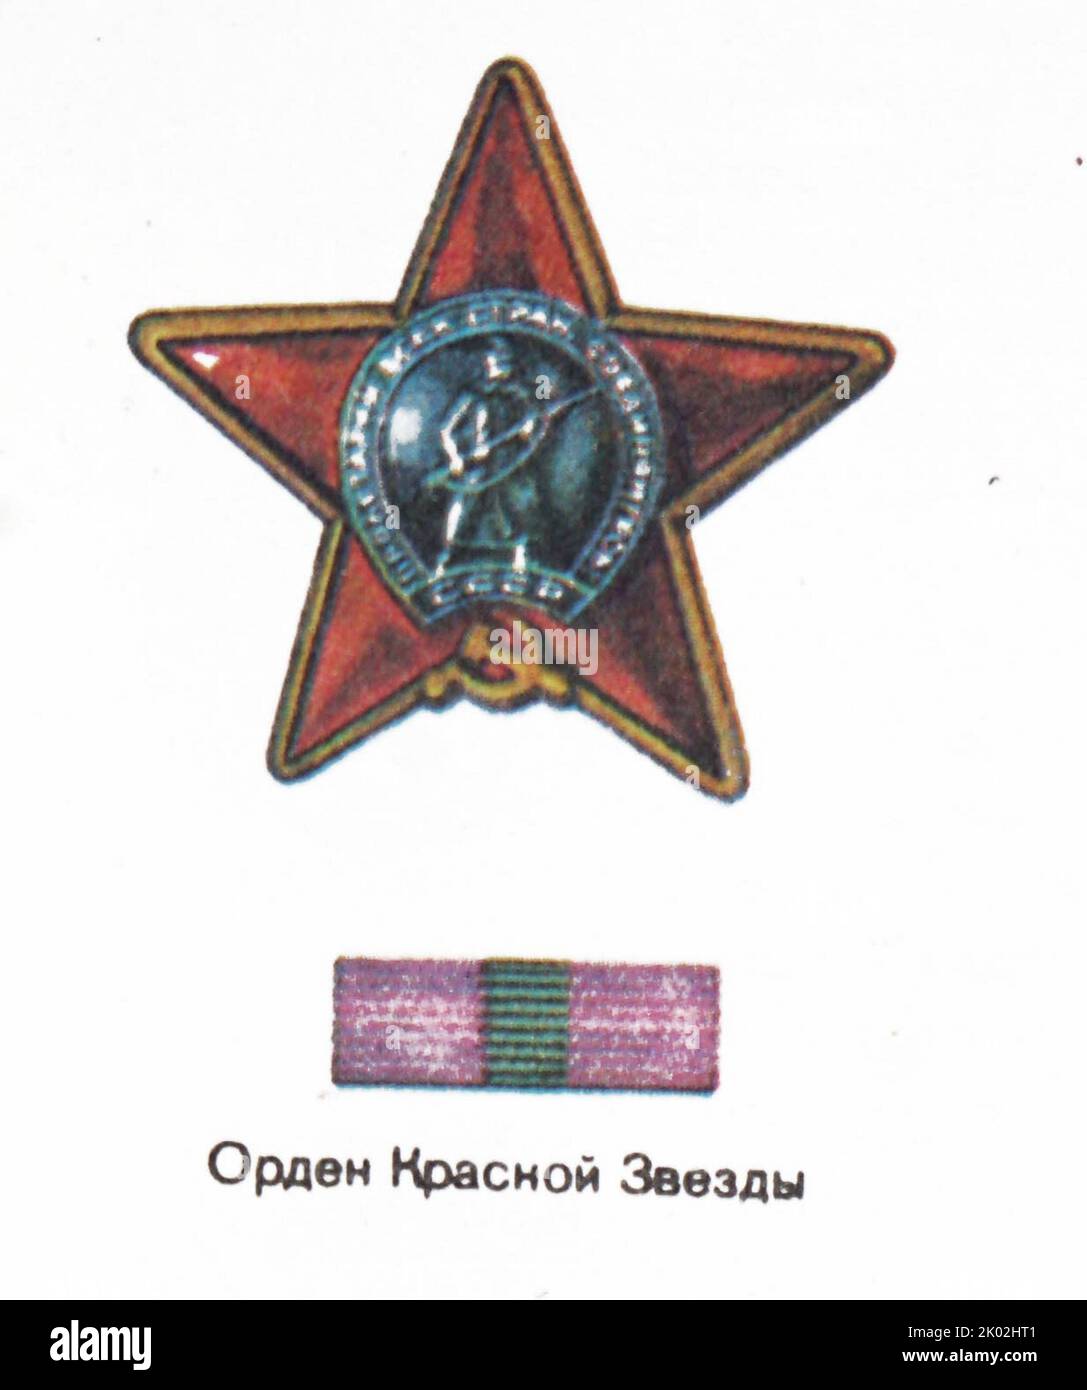 Der Orden des Roten Sterns; eine militärische Dekoration der Sowjetunion. Sie wurde durch Dekret des Präsidiums des Obersten Sowjets der UdSSR vom 6. April 1930 errichtet Stockfoto